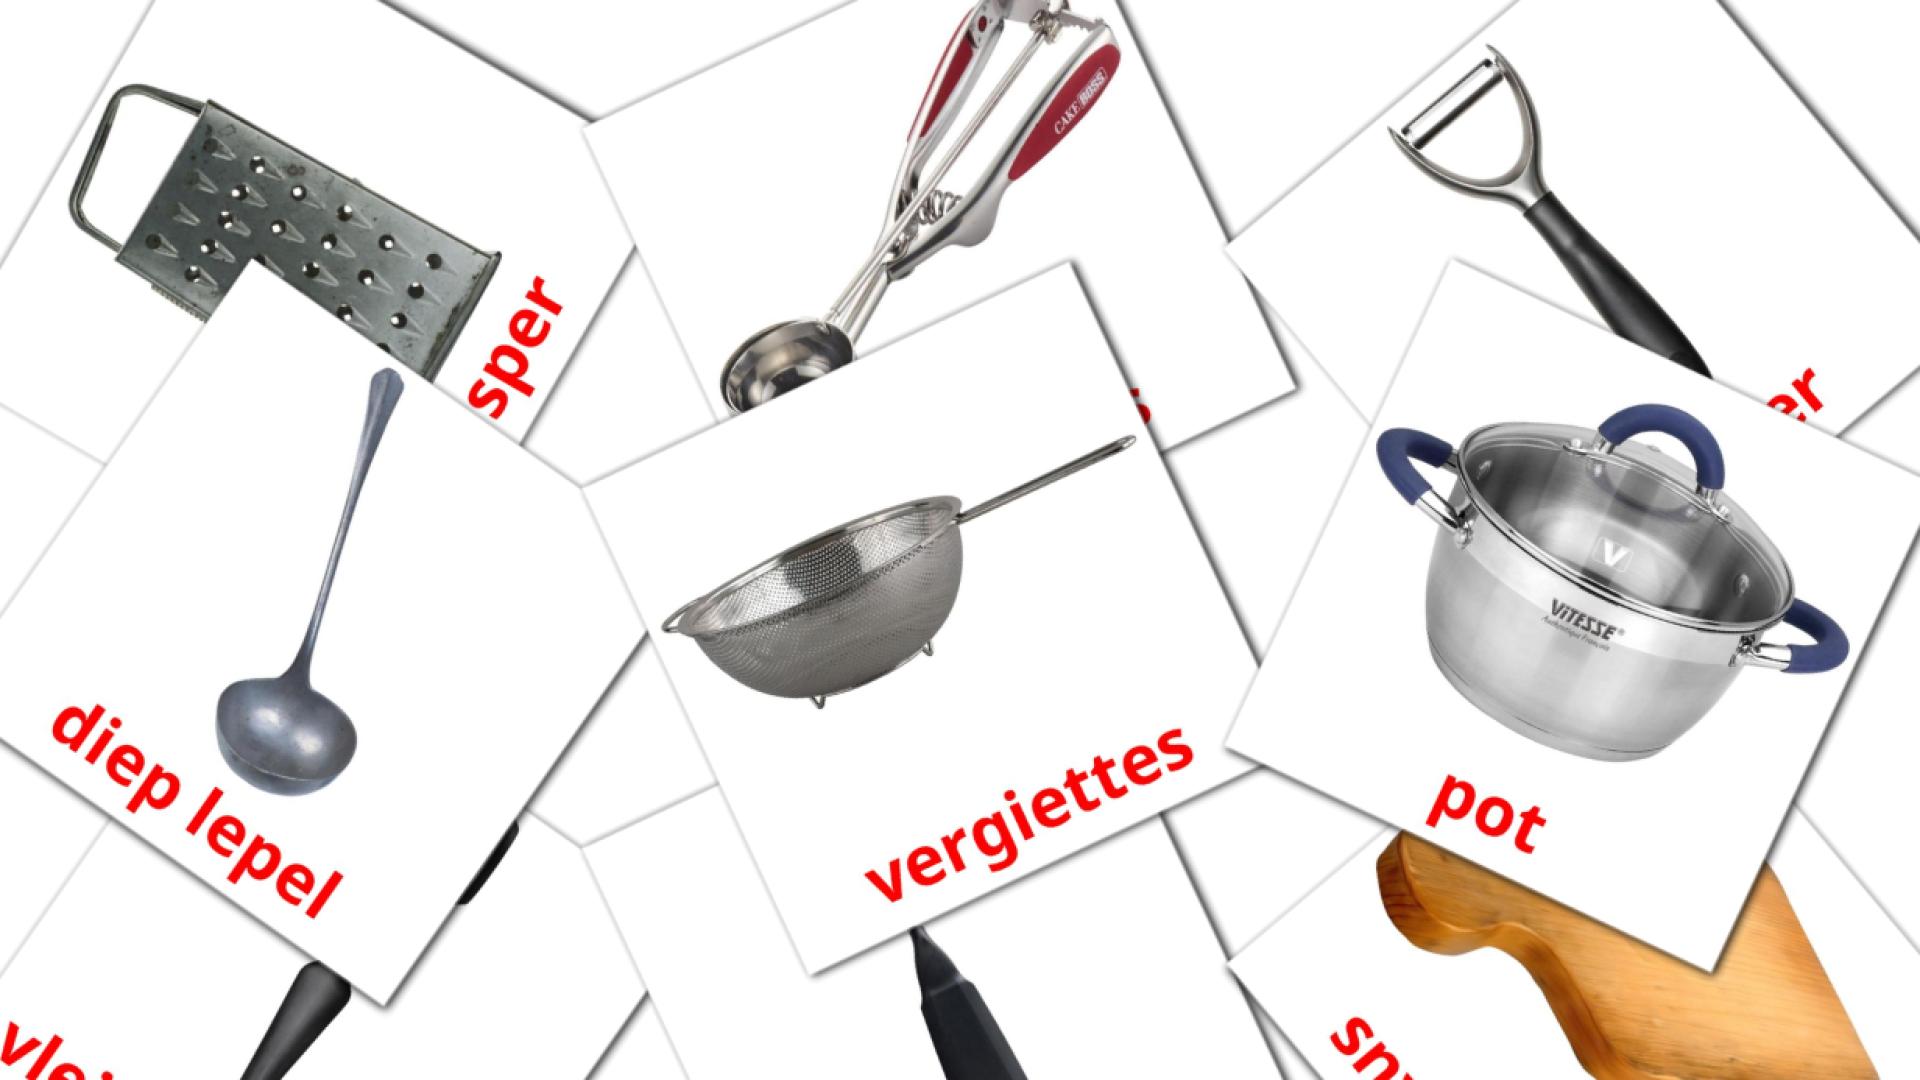 Utensílios de cozinha - Cartões de vocabulário afrikaans